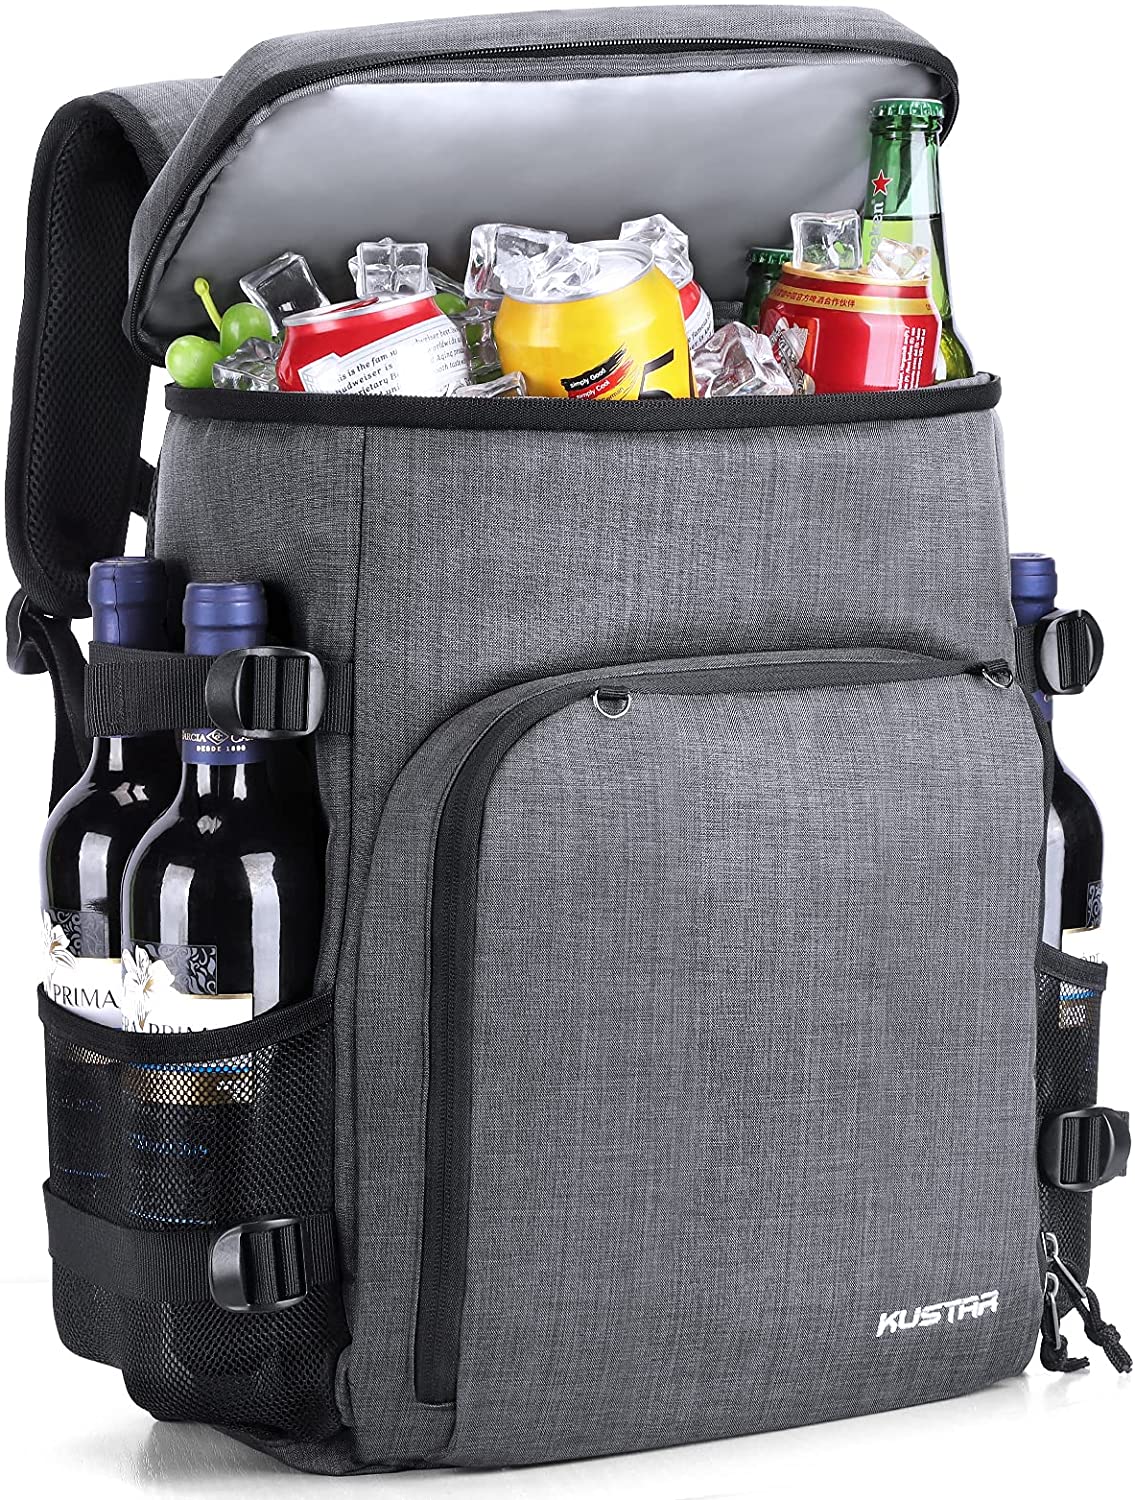 image of Kustar 35L Cooler Backpack.